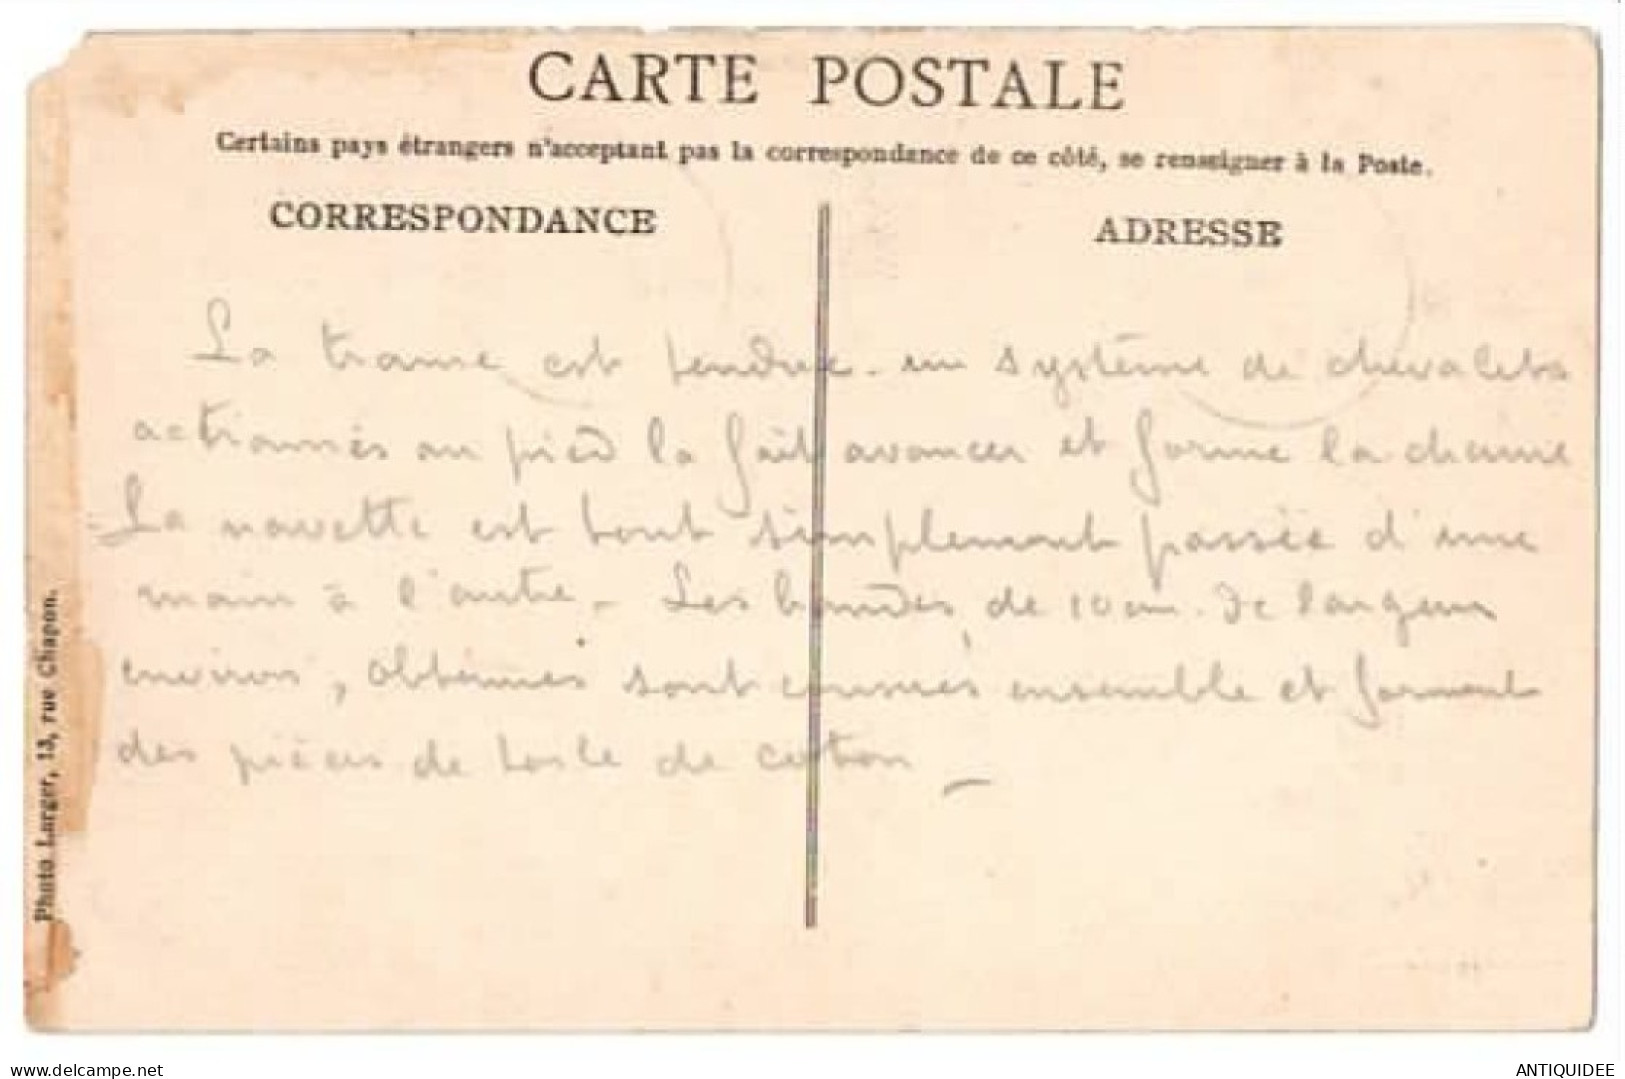 TOMBOUCTOU - Tisserands - (17 OCTOBRE 1922) - Timbre Surchargé Soudan Français - Démarche Ethnographique....... - Senegal